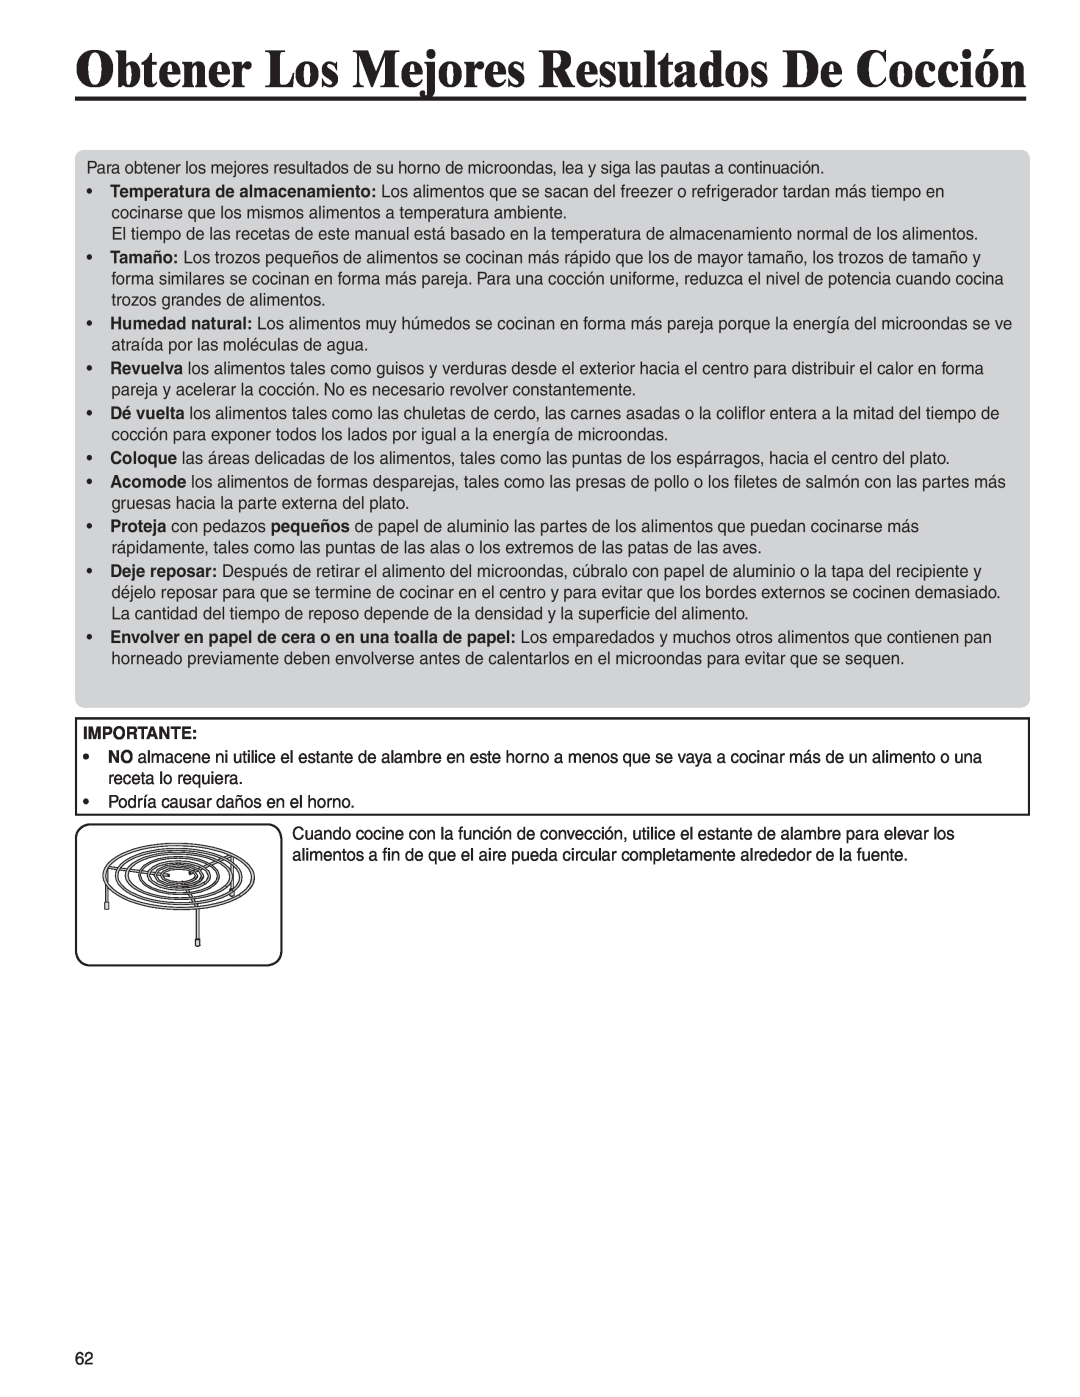 Amana AMC6158BAB, AMC6158BCB important safety instructions Obtener Los Mejores Resultados De Cocción, Importante 